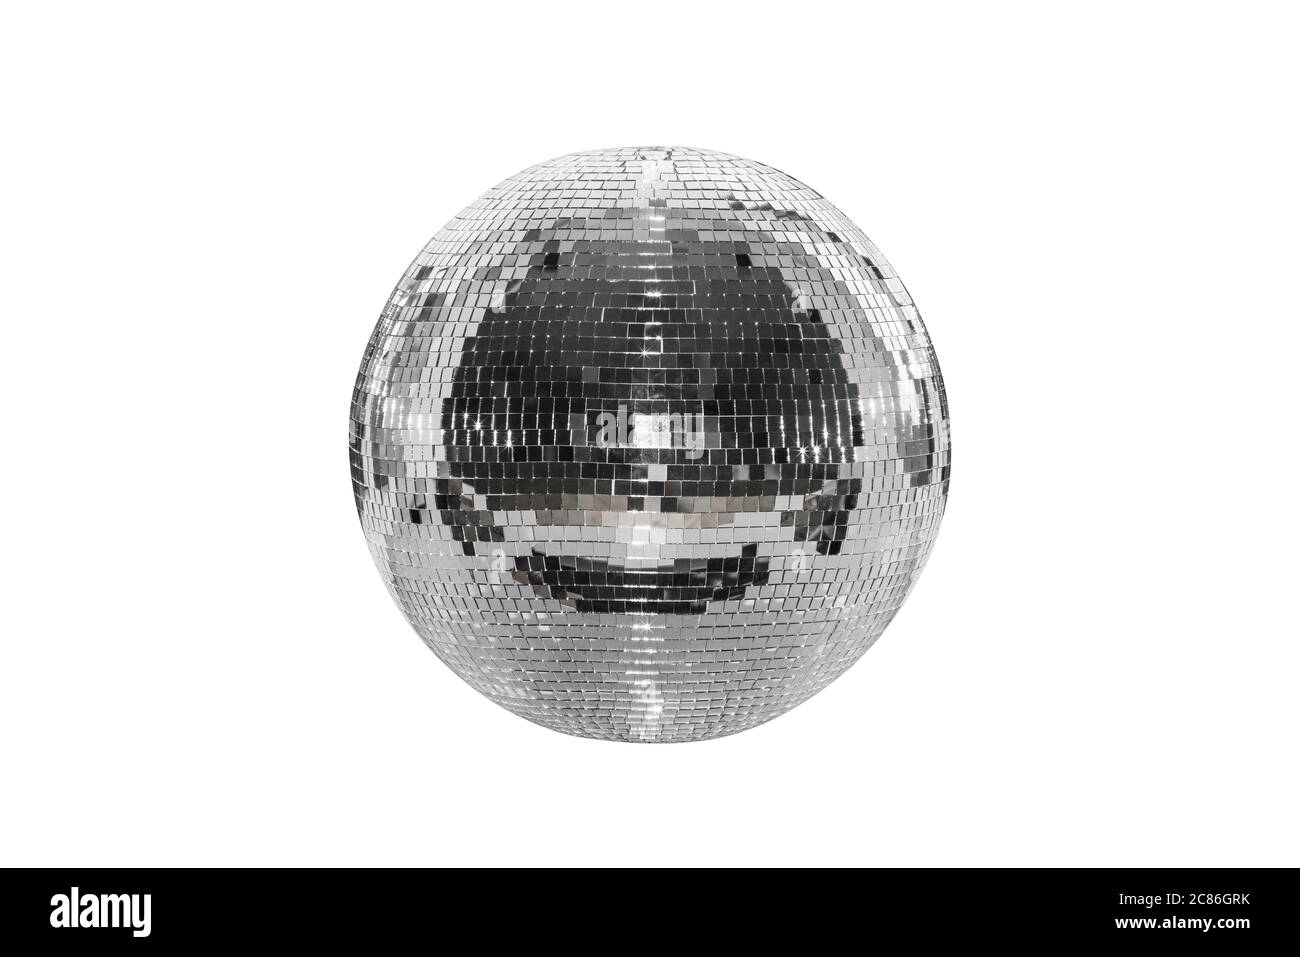 Spiegelball -Fotos und -Bildmaterial in hoher Auflösung – Alamy